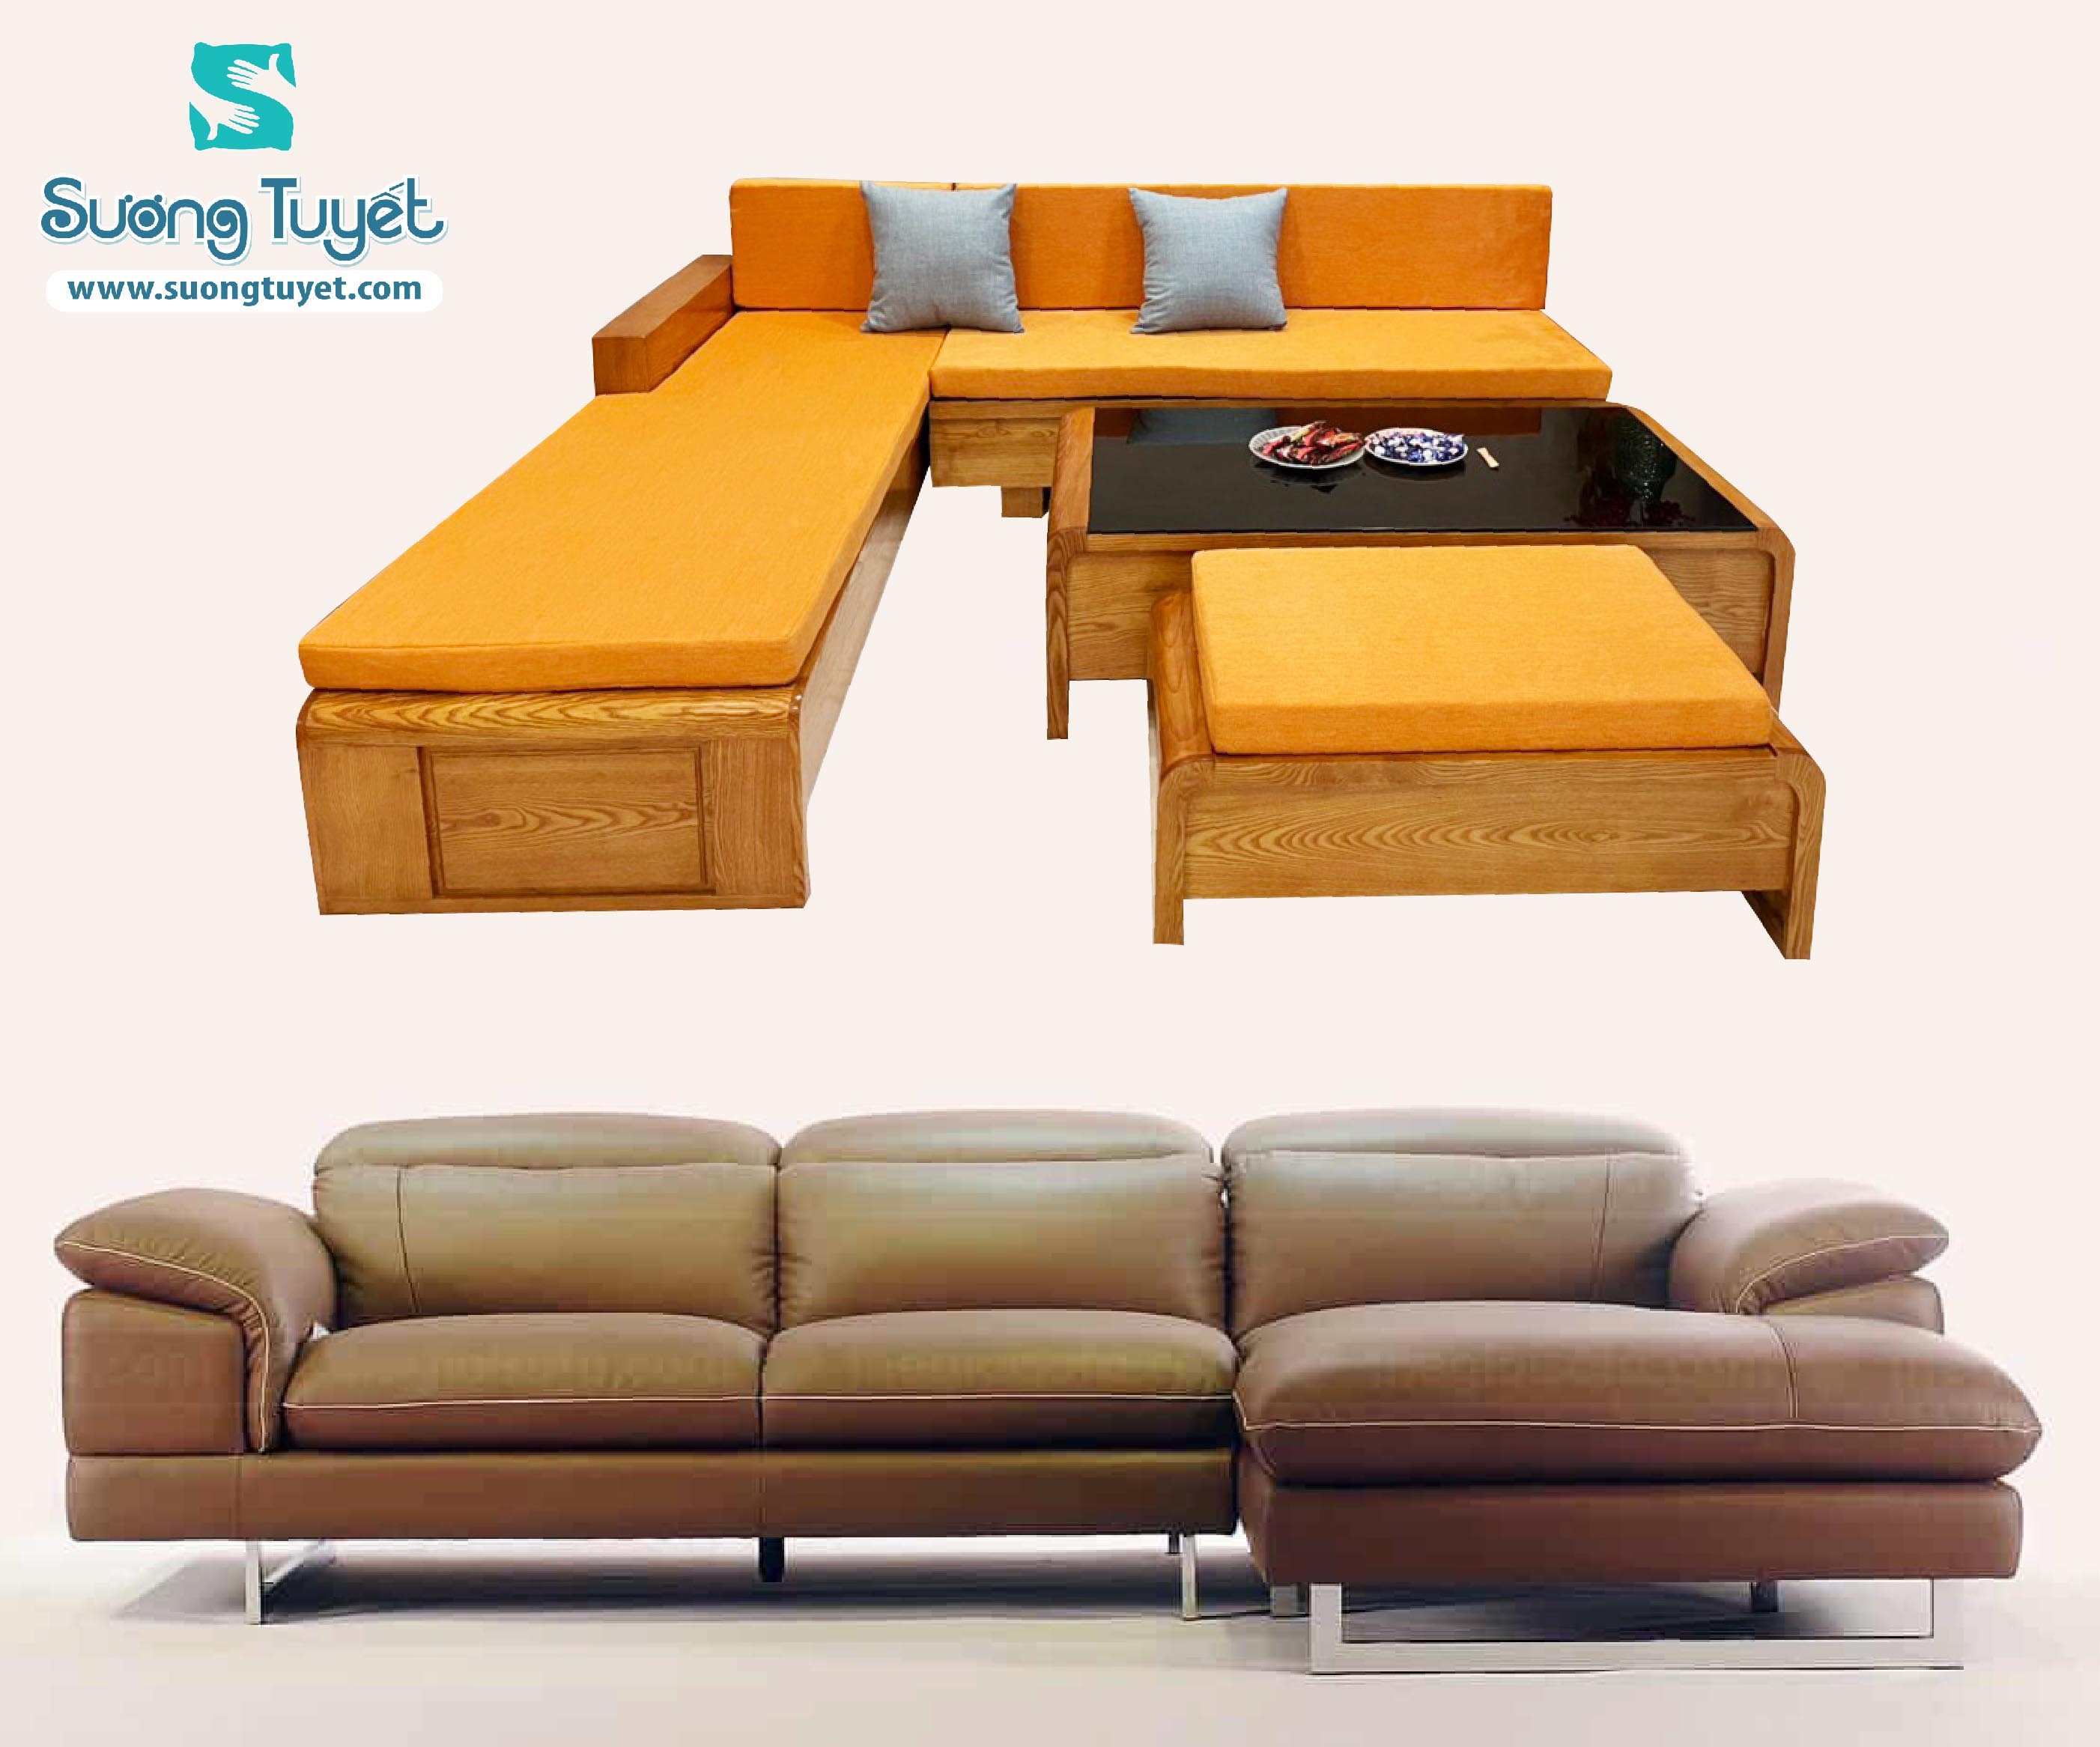 Vải May Đệm Ghế Gỗ, Nệm Ghế Sofa Mẫu Mới Năm 2024 ghế Sofa gỗ bọc nệm: Nệm ghế sofa mẫu mới 2024 - Vòng quanh thị trường nội thất 2024, nhiều mẫu nệm ghế sofa mới được tung ra với thiết kế đa dạng và đẹp mắt. Với chất liệu vải may đệm ghế gỗ chất lượng cao, chiếc ghế sofa của bạn sẽ trở nên mềm mại và thoải mái hơn. Nếu bạn đang muốn làm mới không gian phòng khách của mình, hãy nắm bắt những mẫu nệm ghế sofa mới nhất năm 2024 từ các đại lý uy tín trên thị trường.